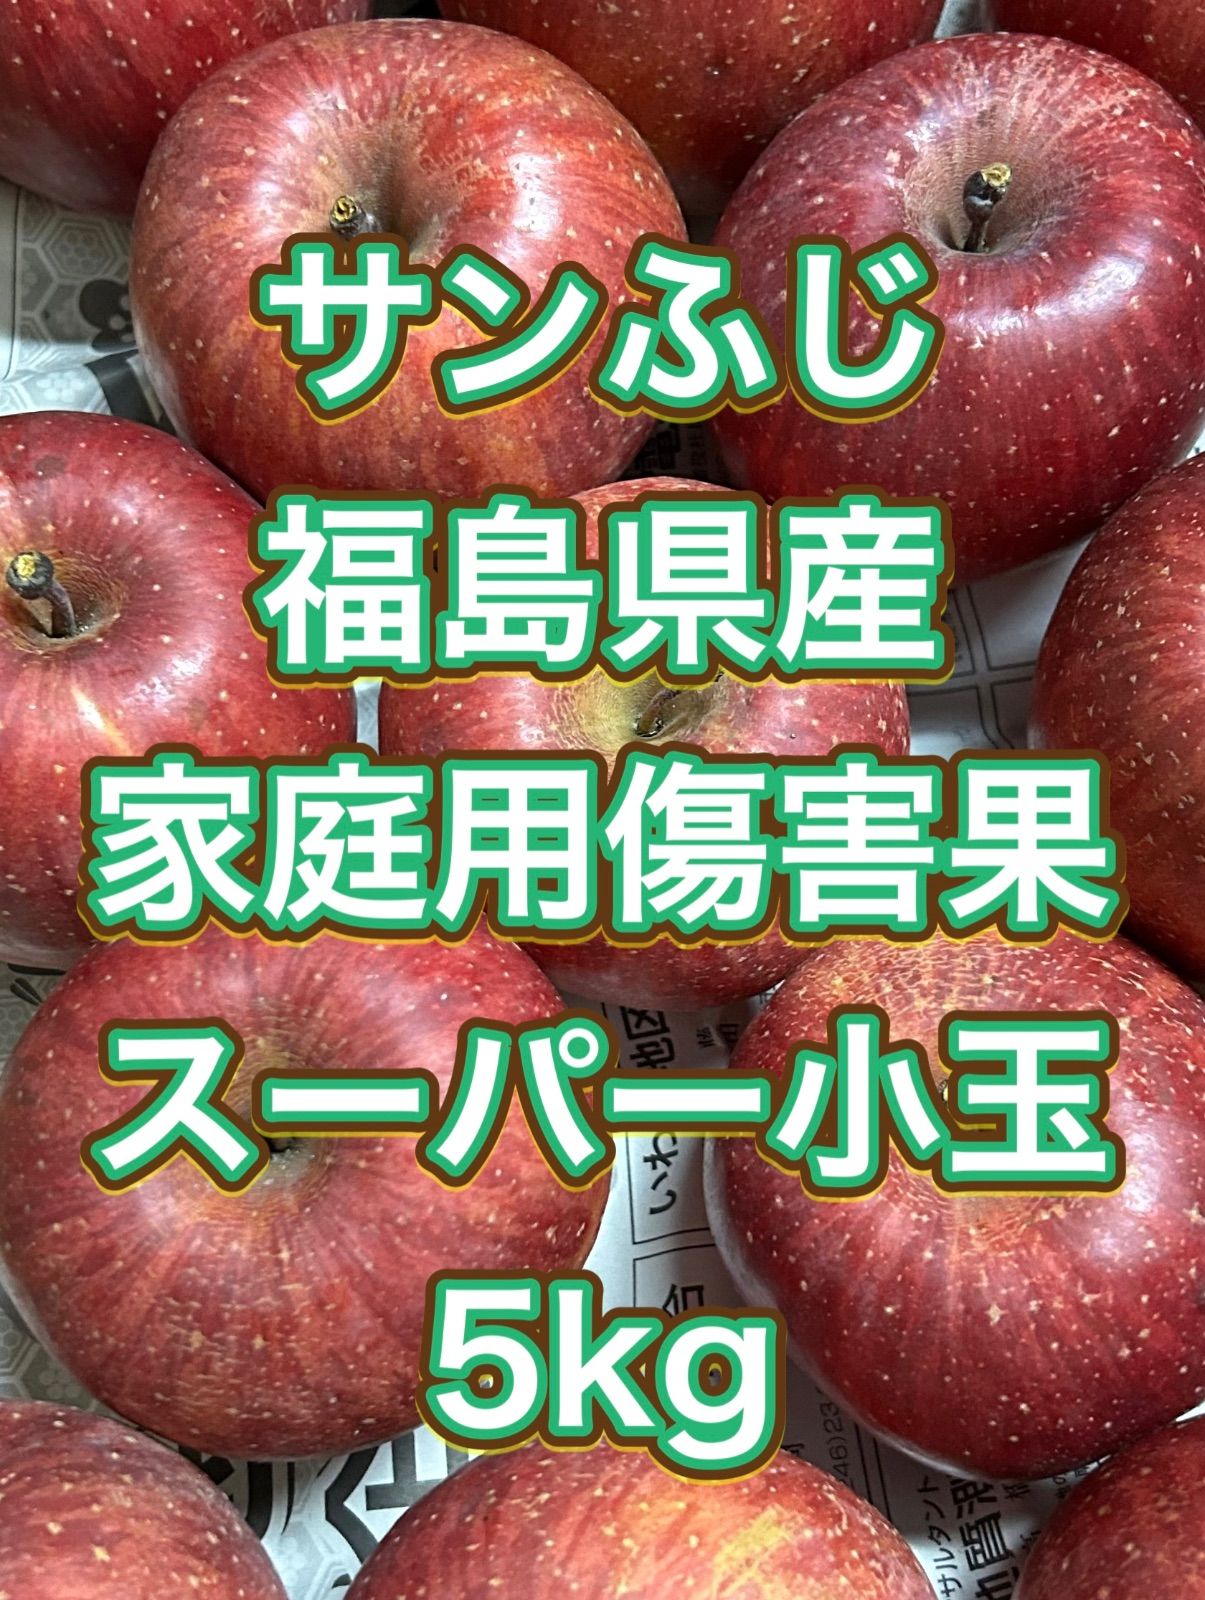 適切な価格 Hana様 摘果りんご10キロ